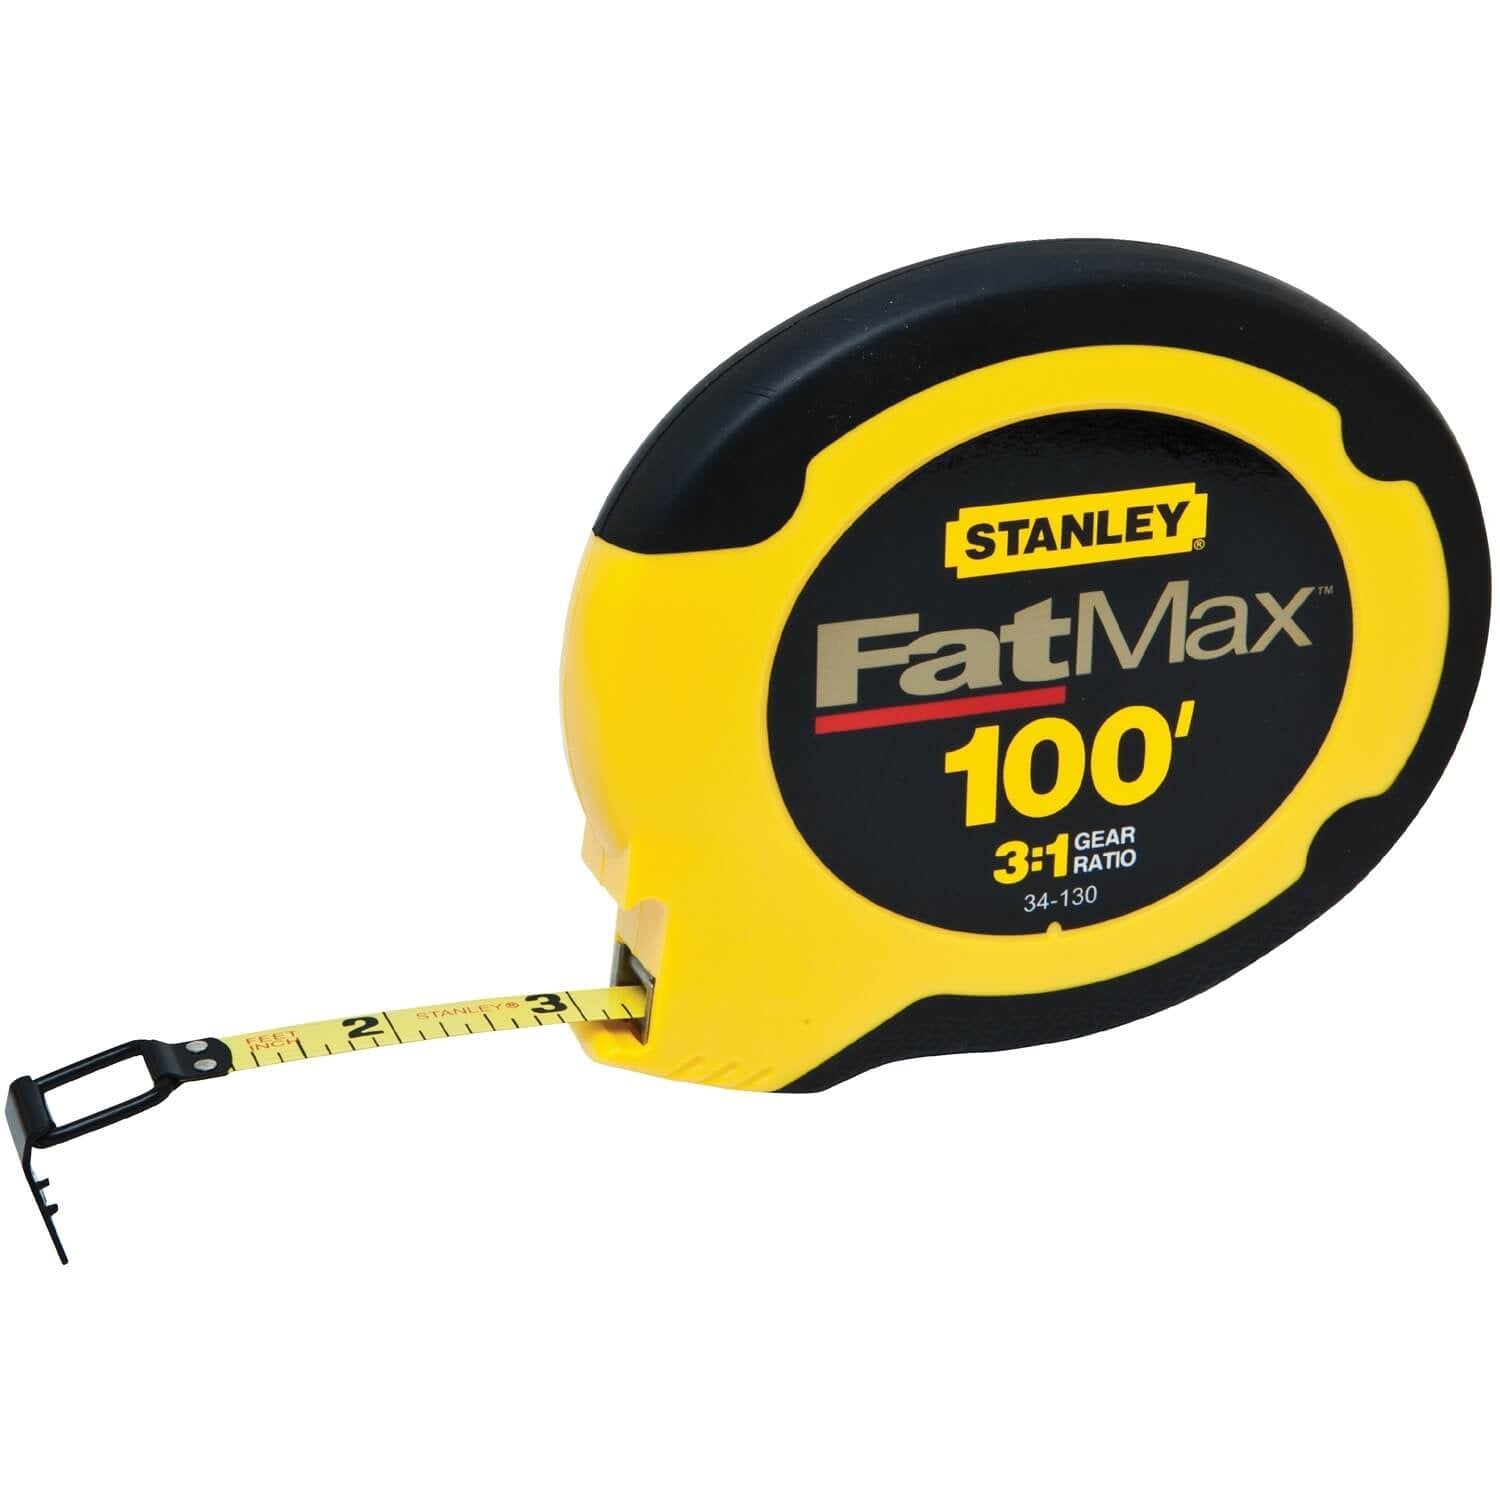 Stanley 34-130 - 100' Fatmax Tape